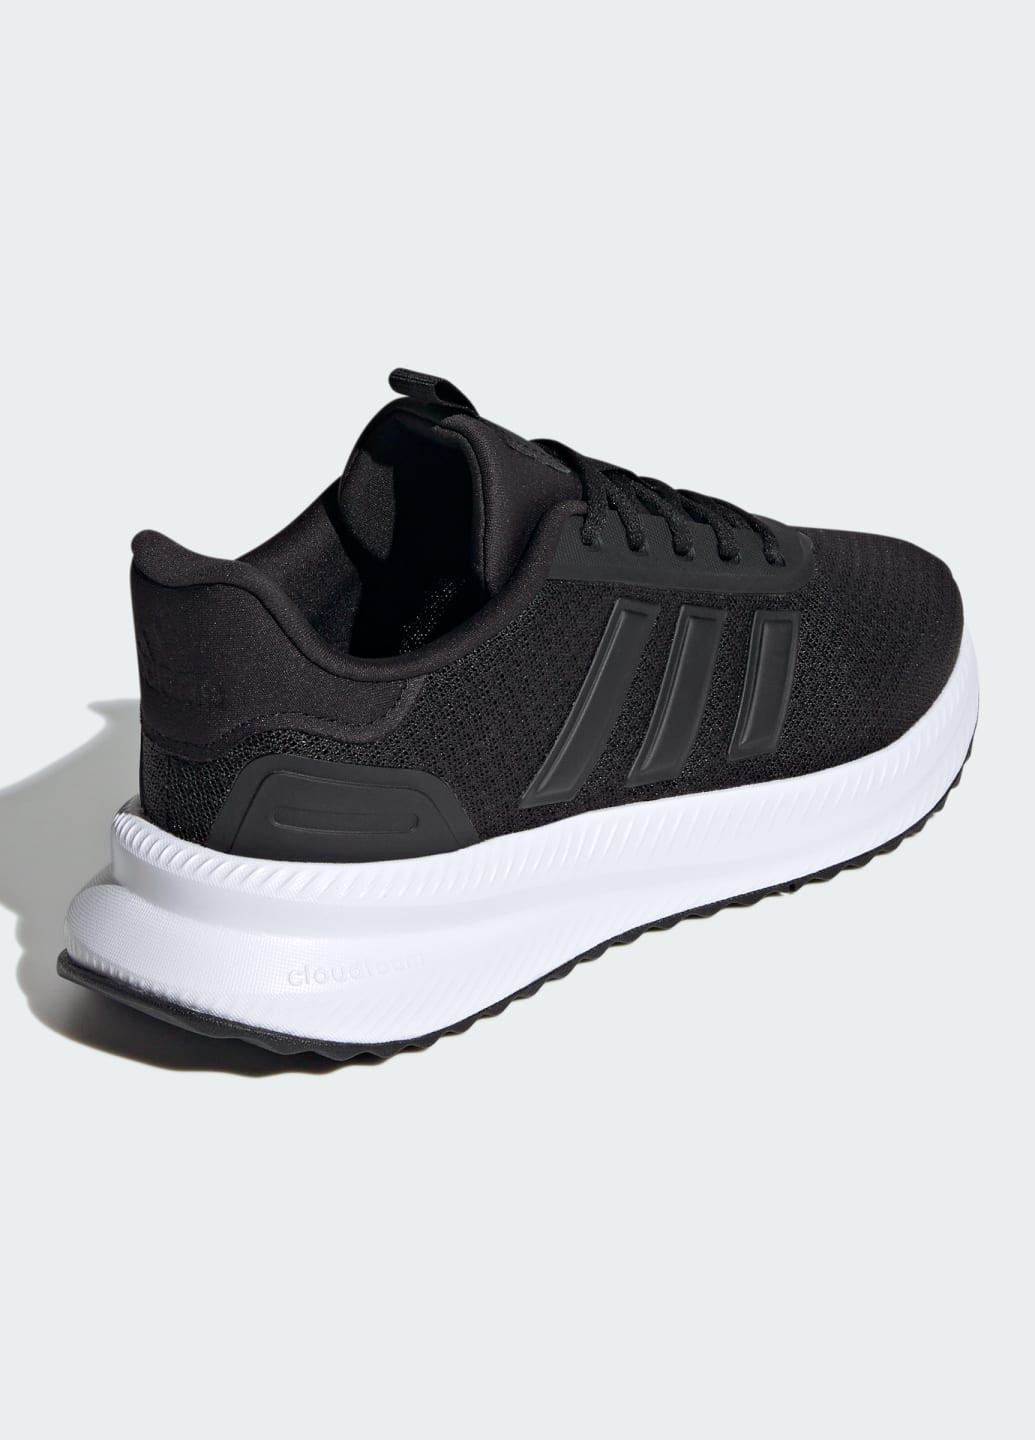 Черные всесезонные кроссовки x_plr path adidas